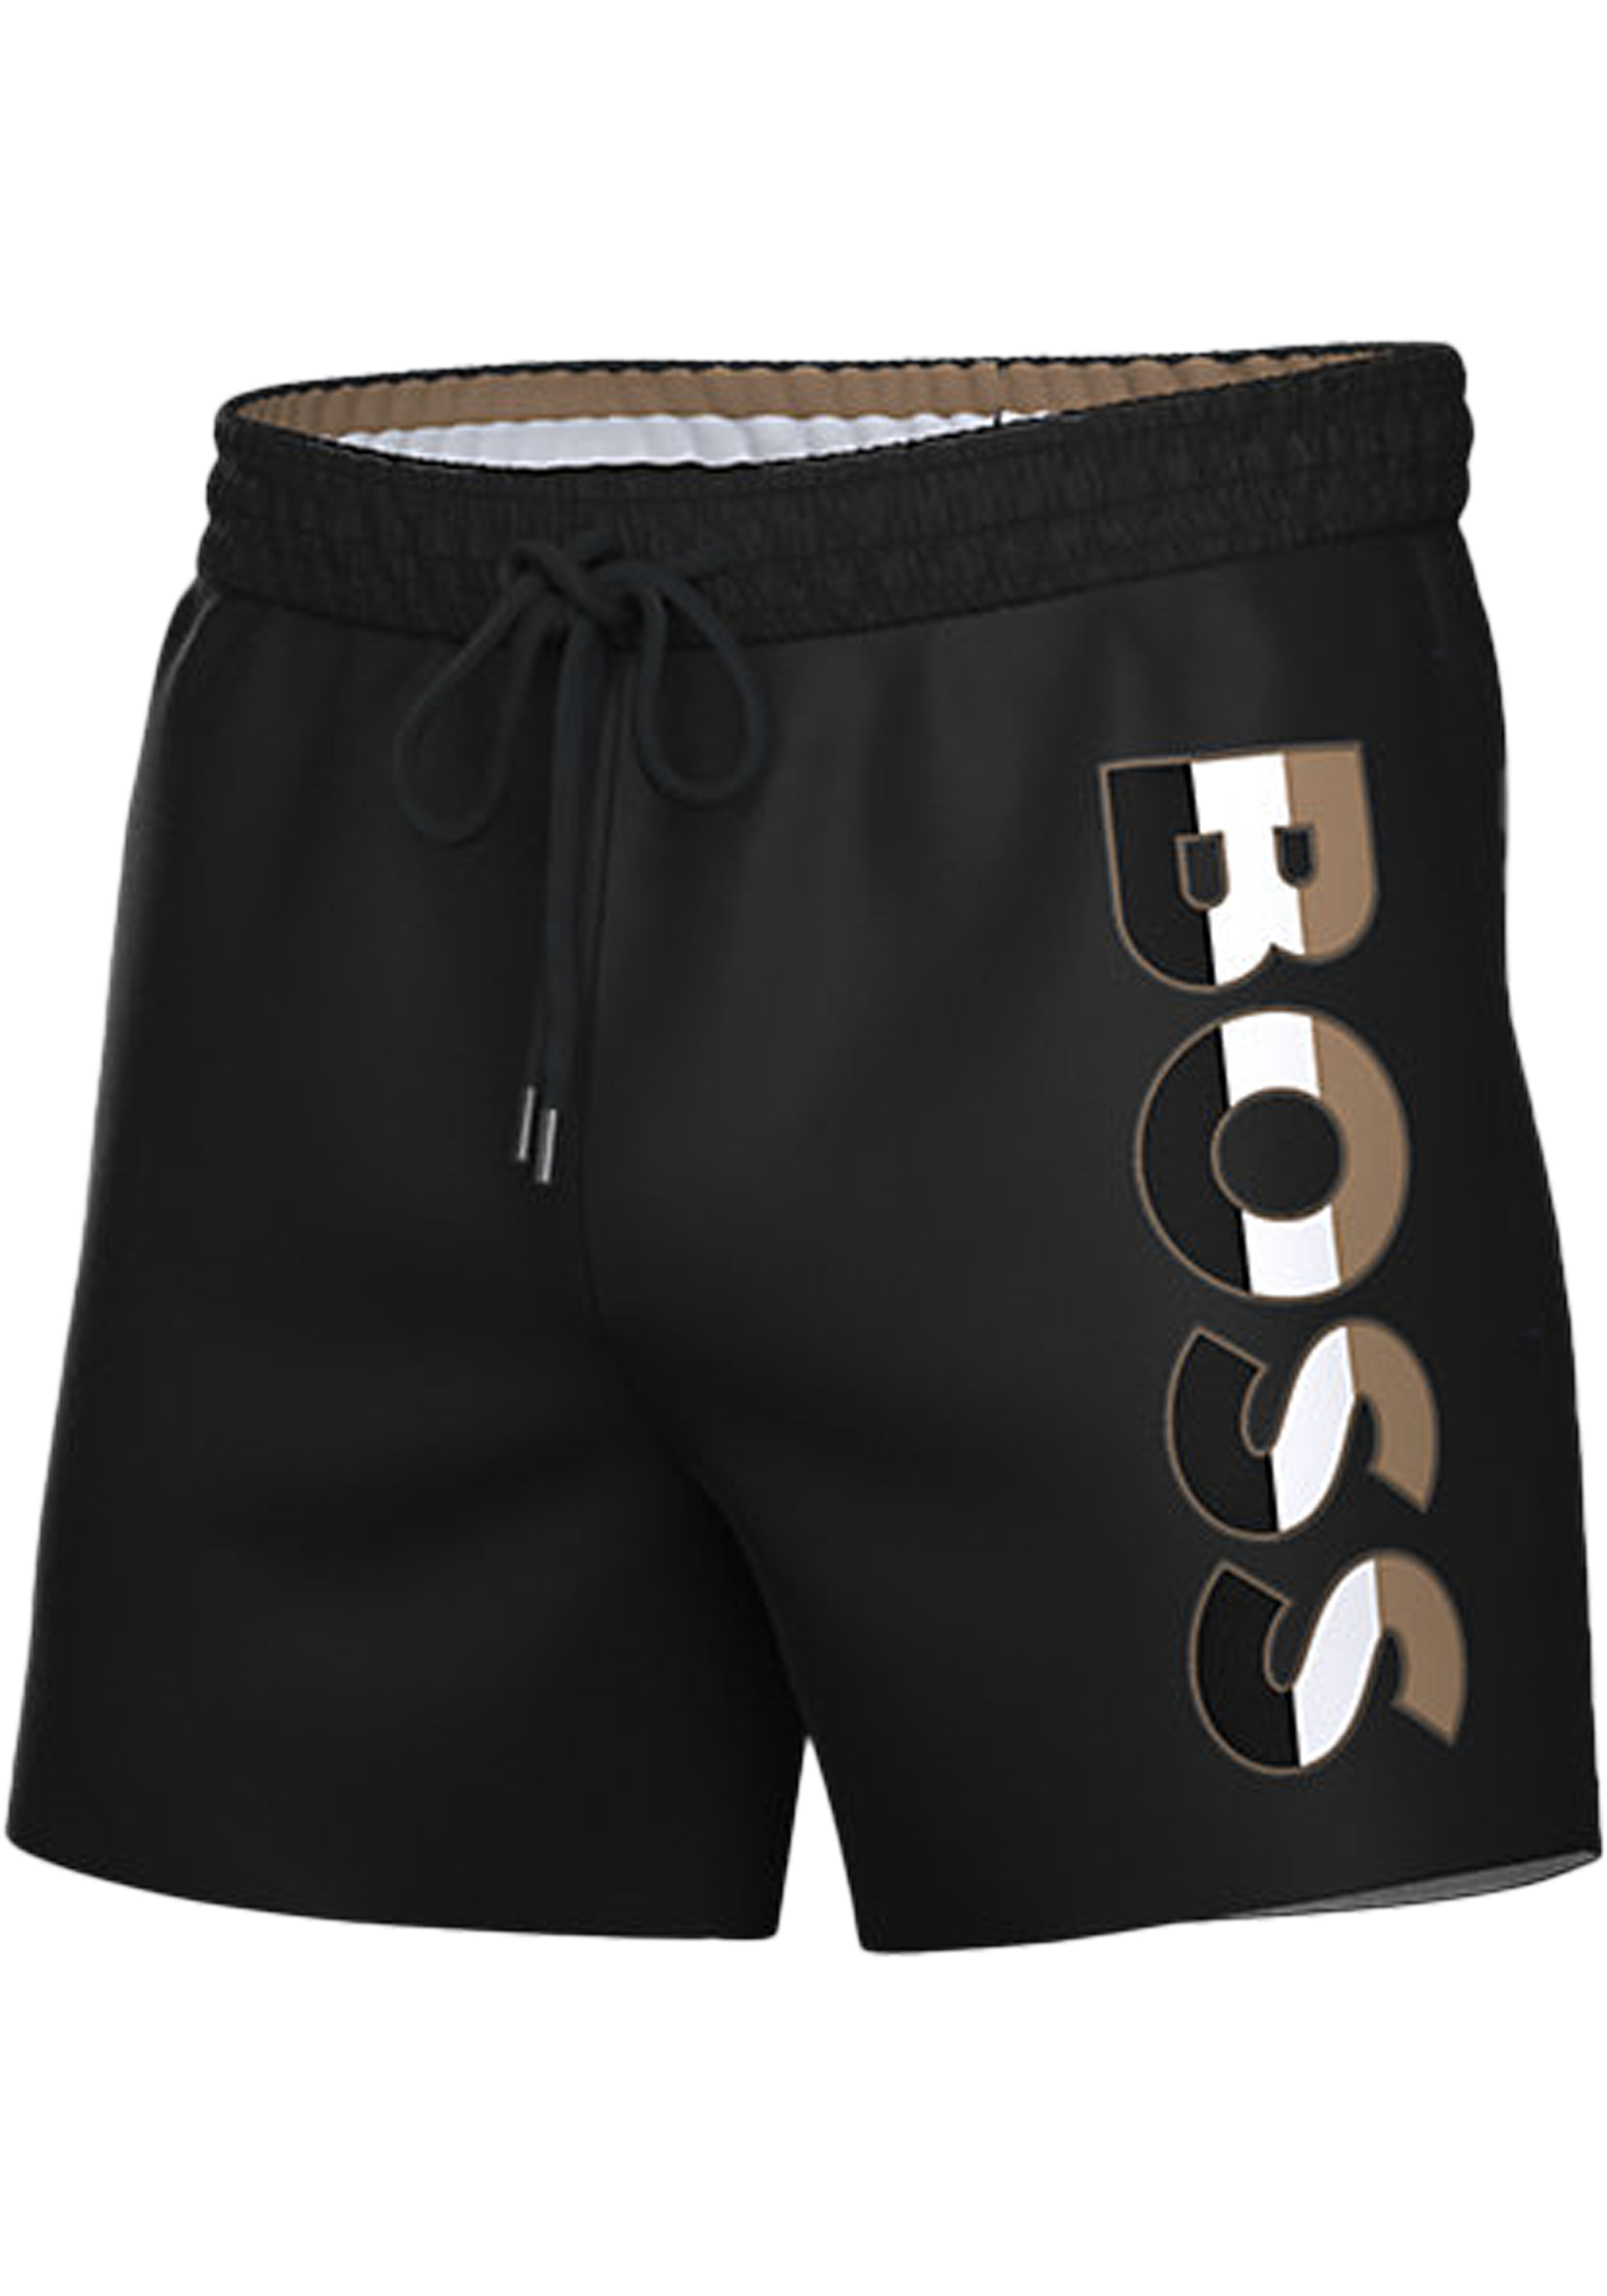 HUGO BOSS Bold swim shorts, heren zwembroek, zwart - de voorjaarsmode